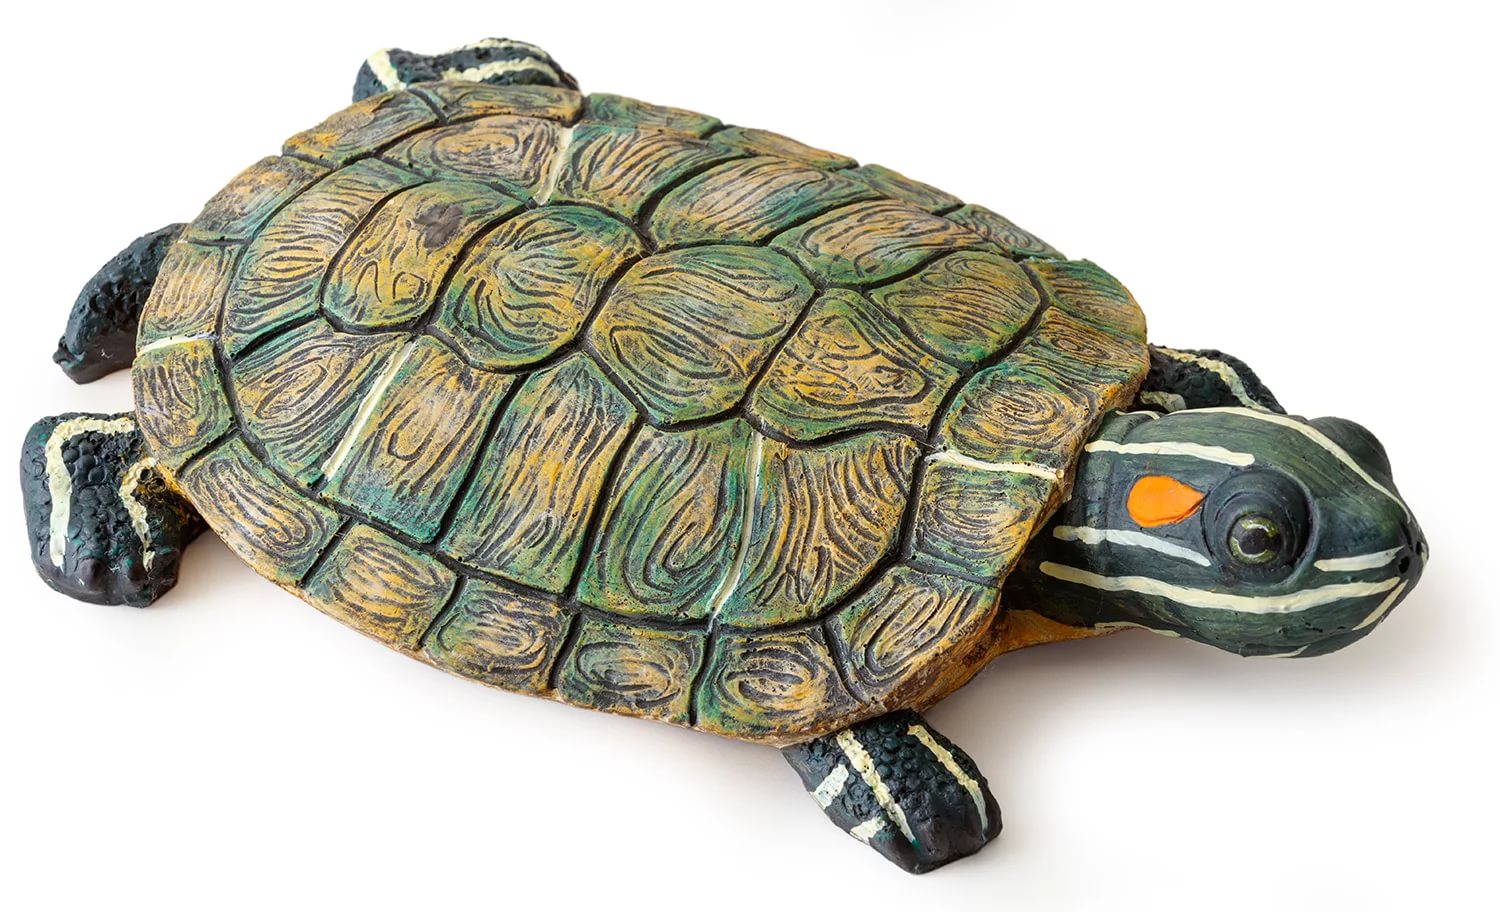 Берег для акватеррариума - большая черепаха, Exo-Terra от зоомагазина Дино Зоо